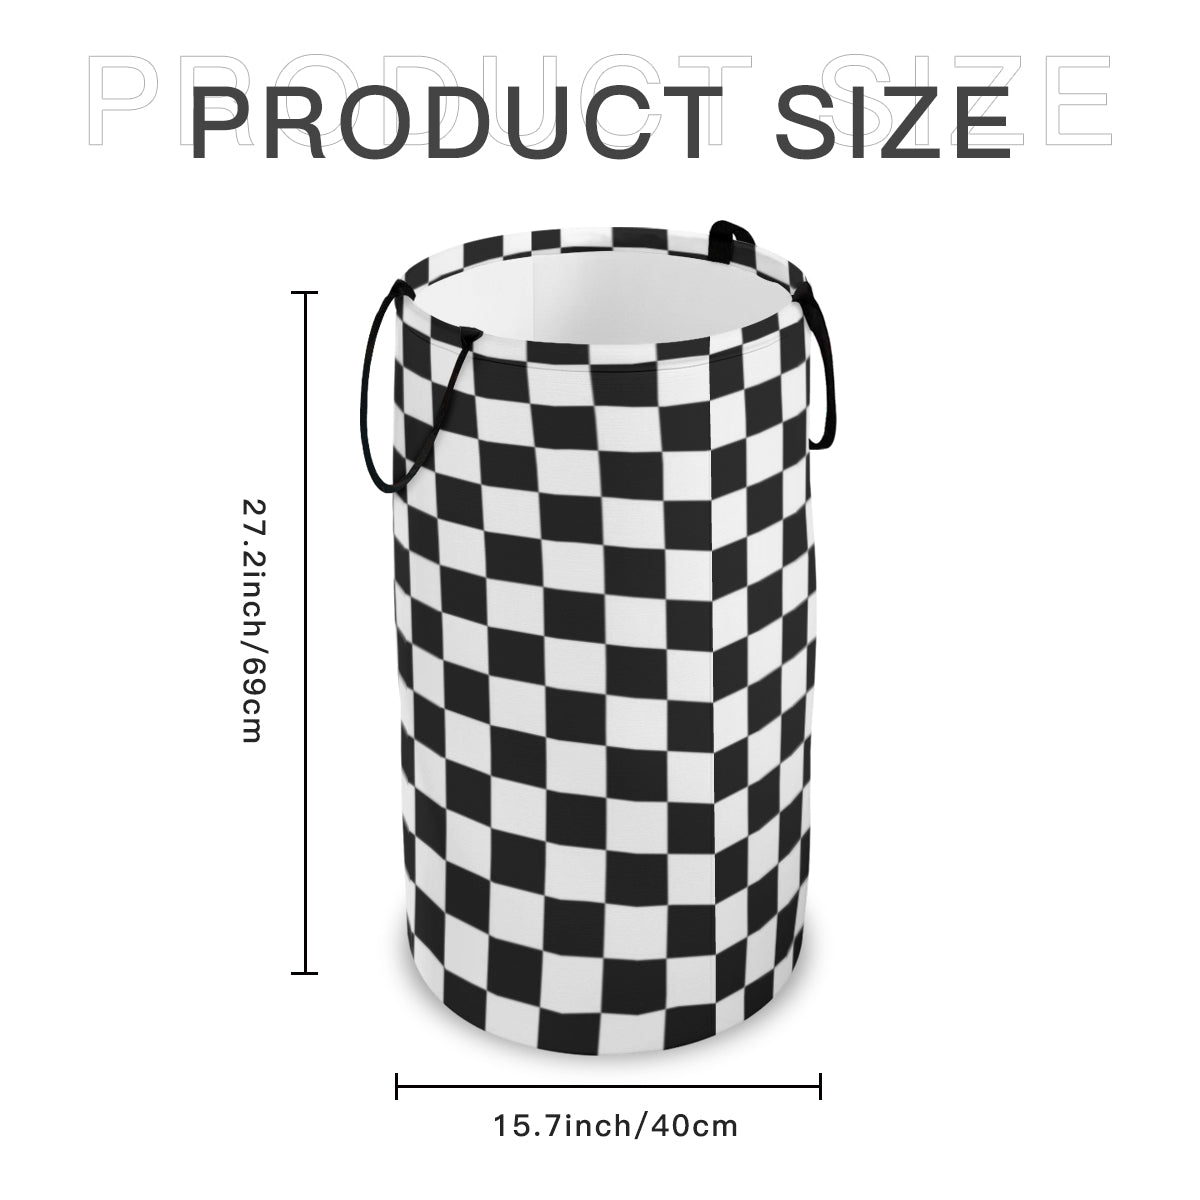 Large Capacity Foldable Laundry Basket Black and White | Polyester